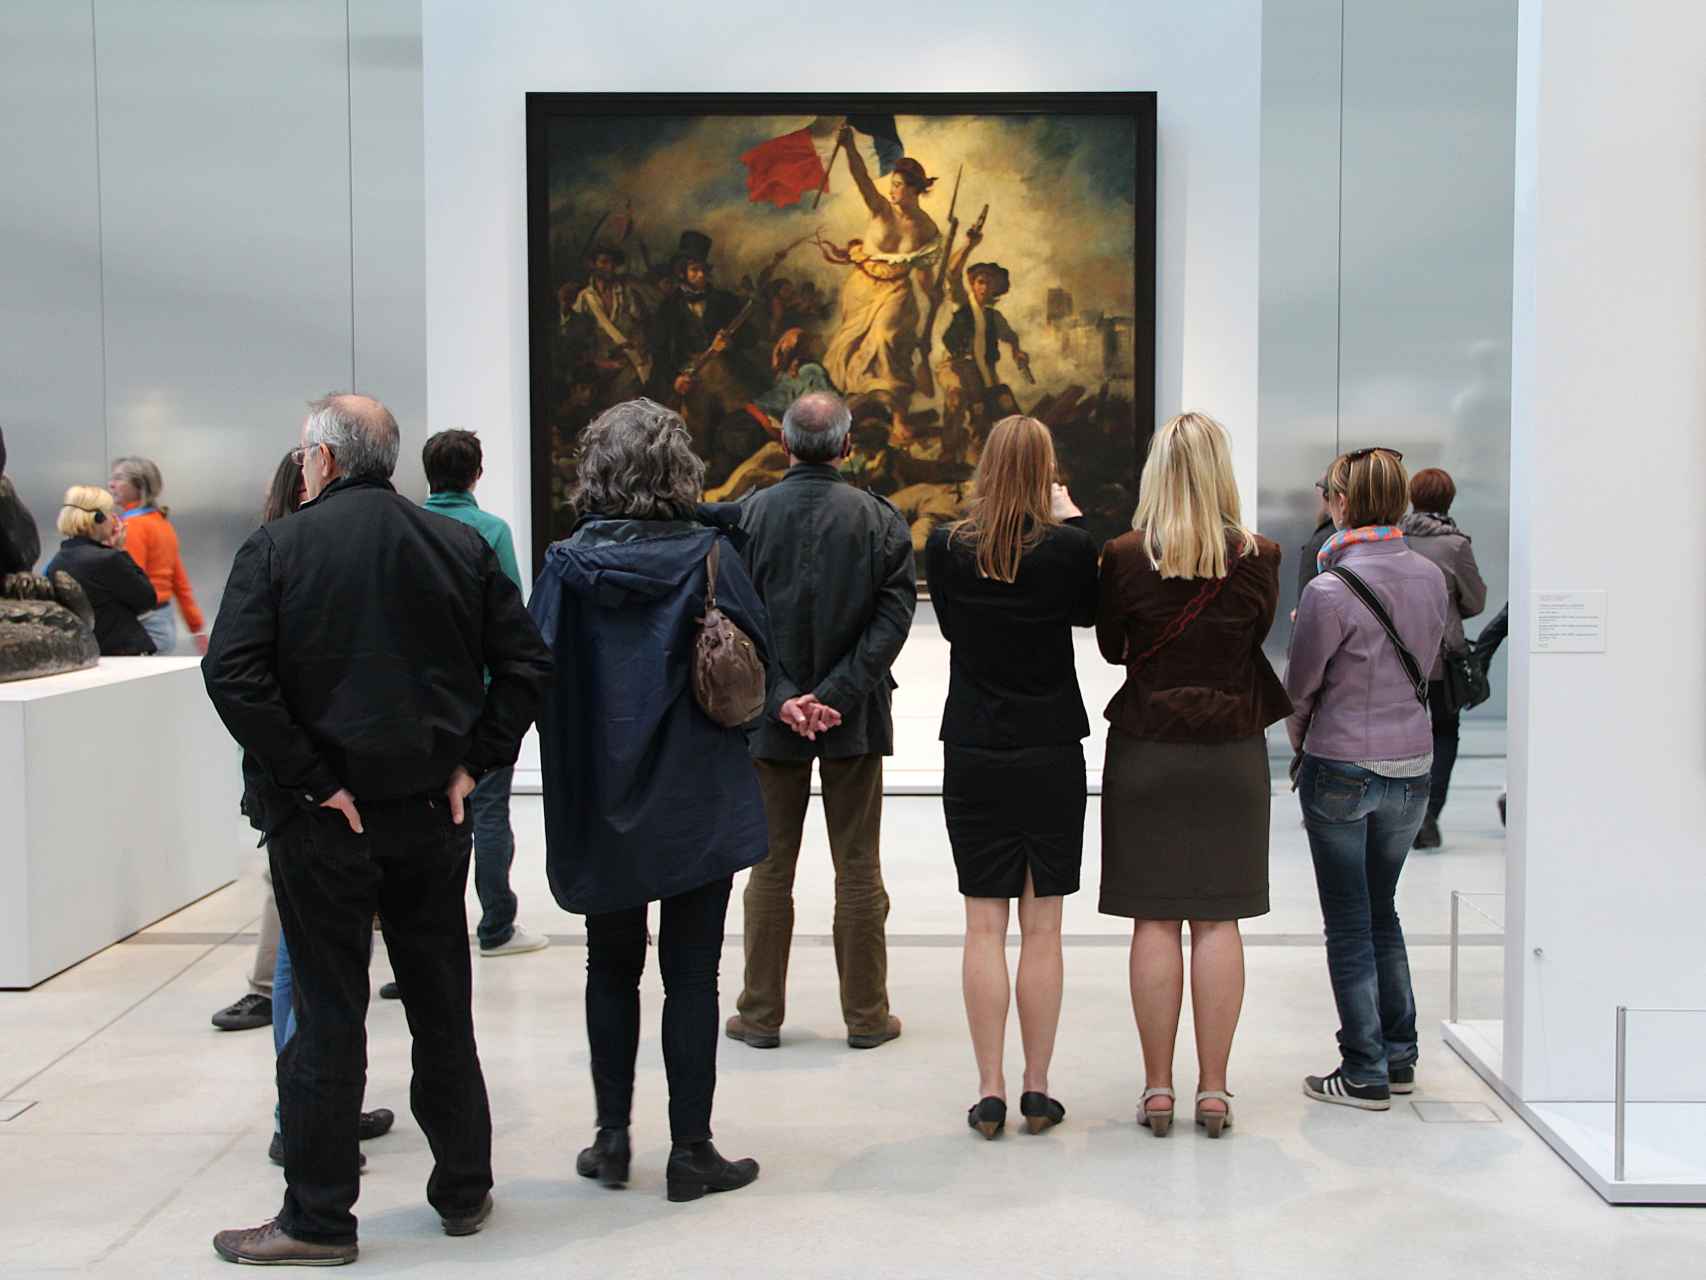 La libertad guiando al pueblo, en una exposición temporal en el Louvre-Lens.